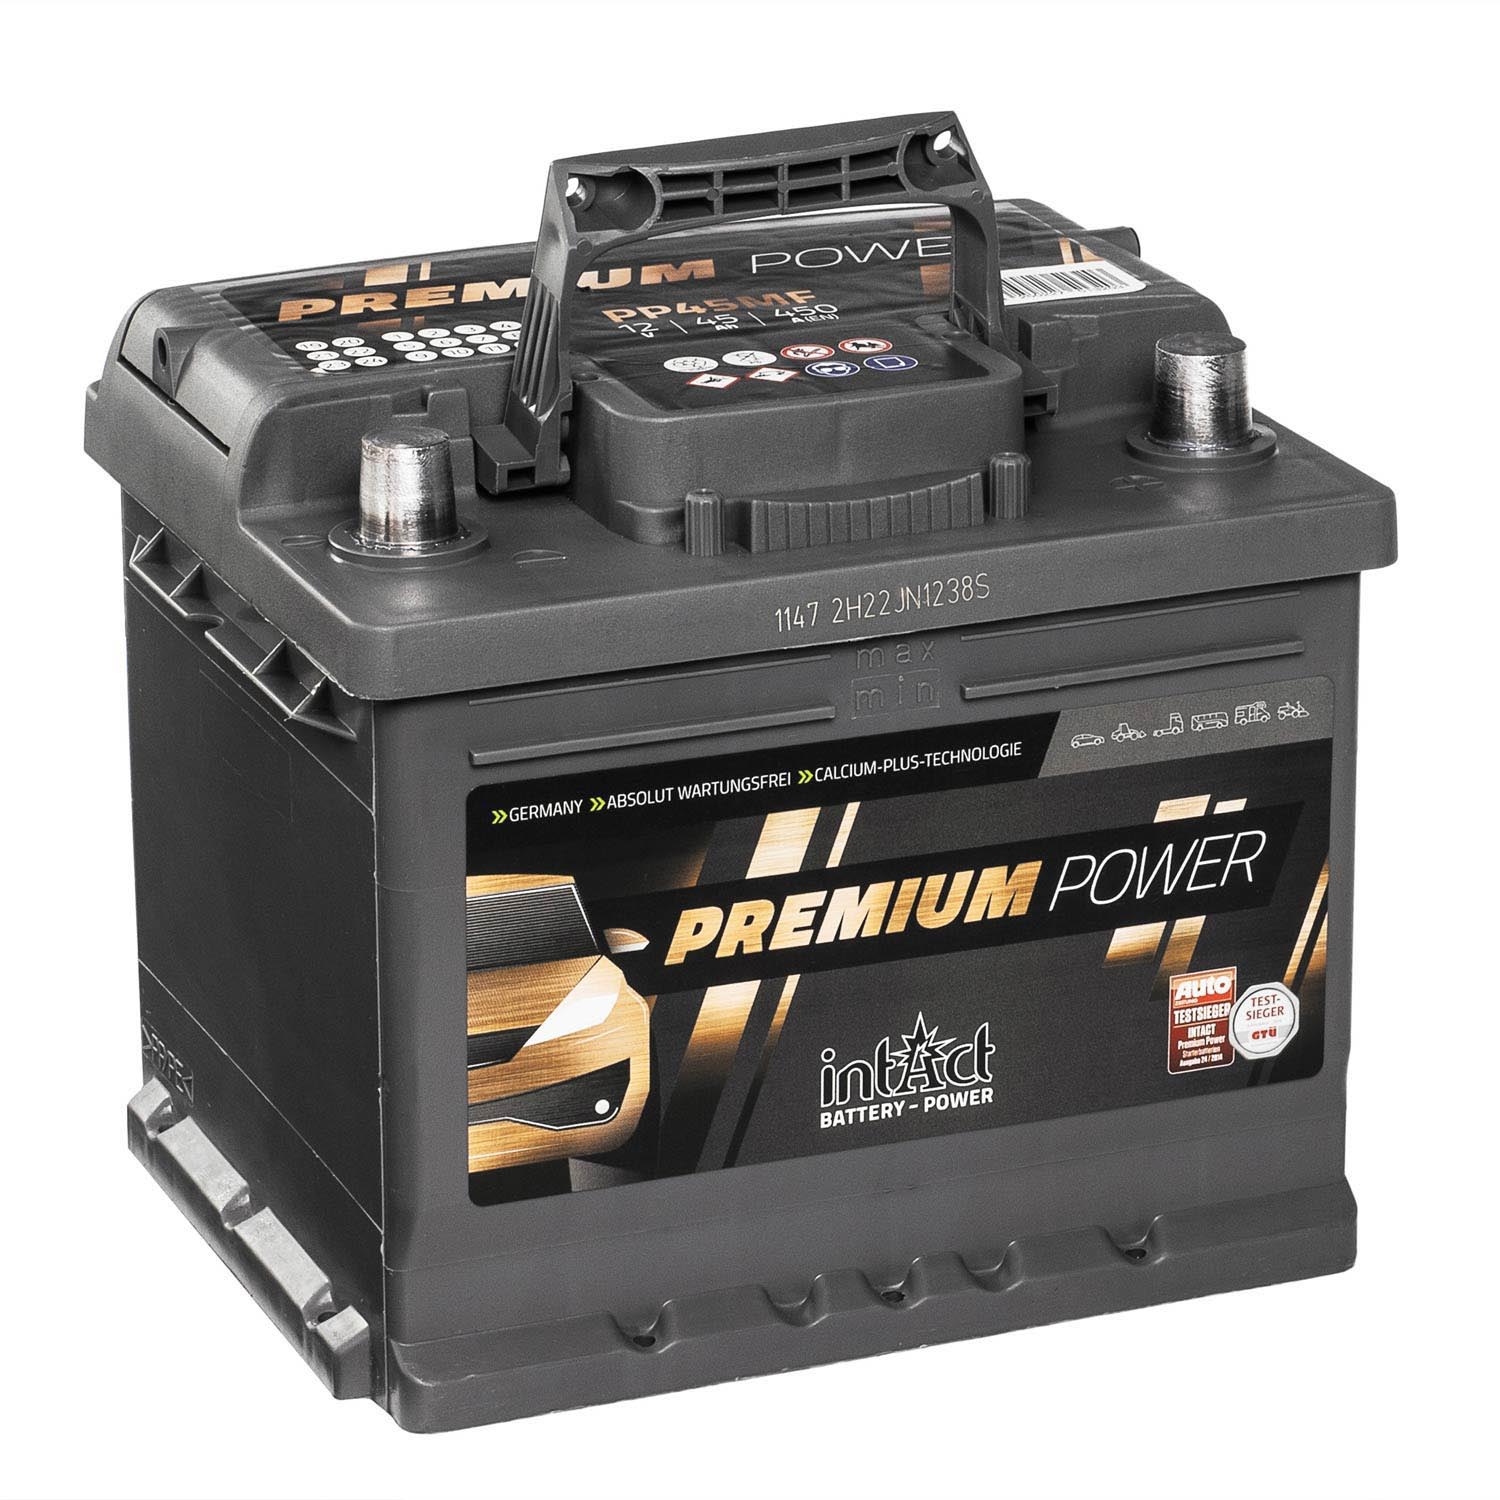 https://batterie24.de/media/image/d3/38/01/intact-premium-power-pp45mf-autobatterie-12v-45ah-4965-90109-AUwT.jpg